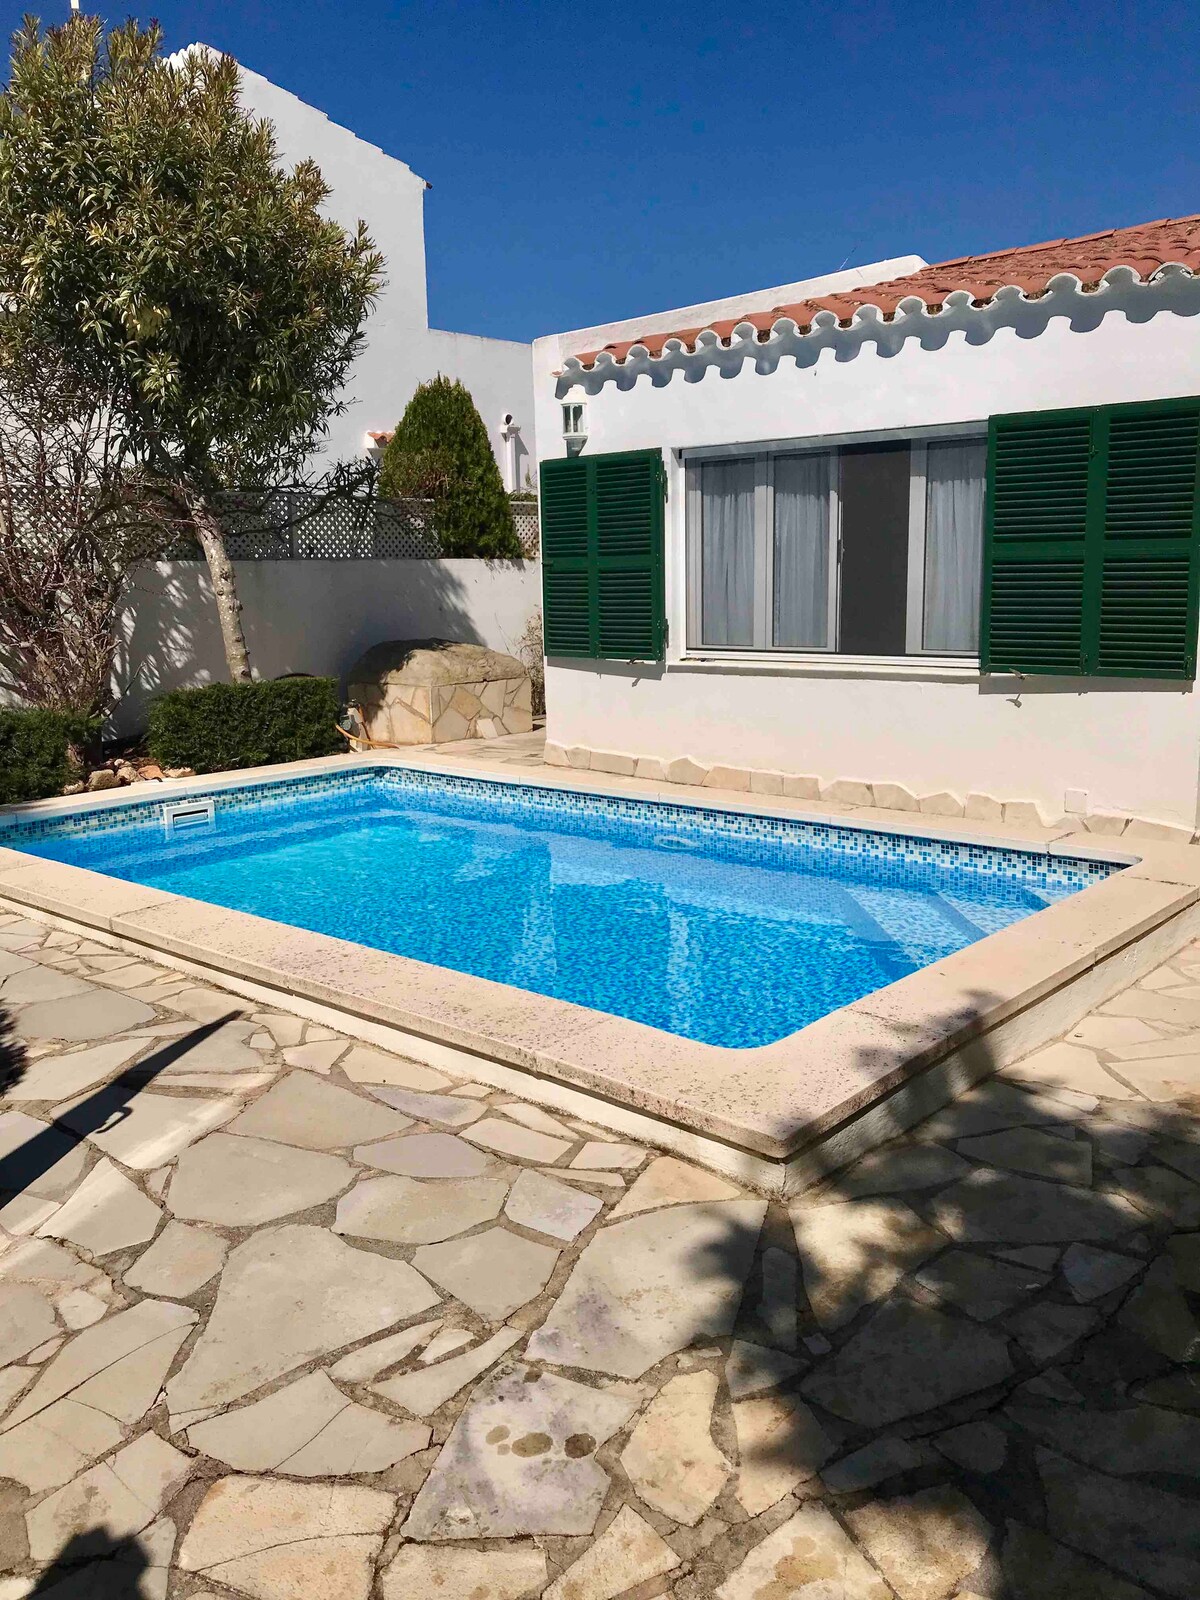 Chalet “La Rosa”
con piscina privata.